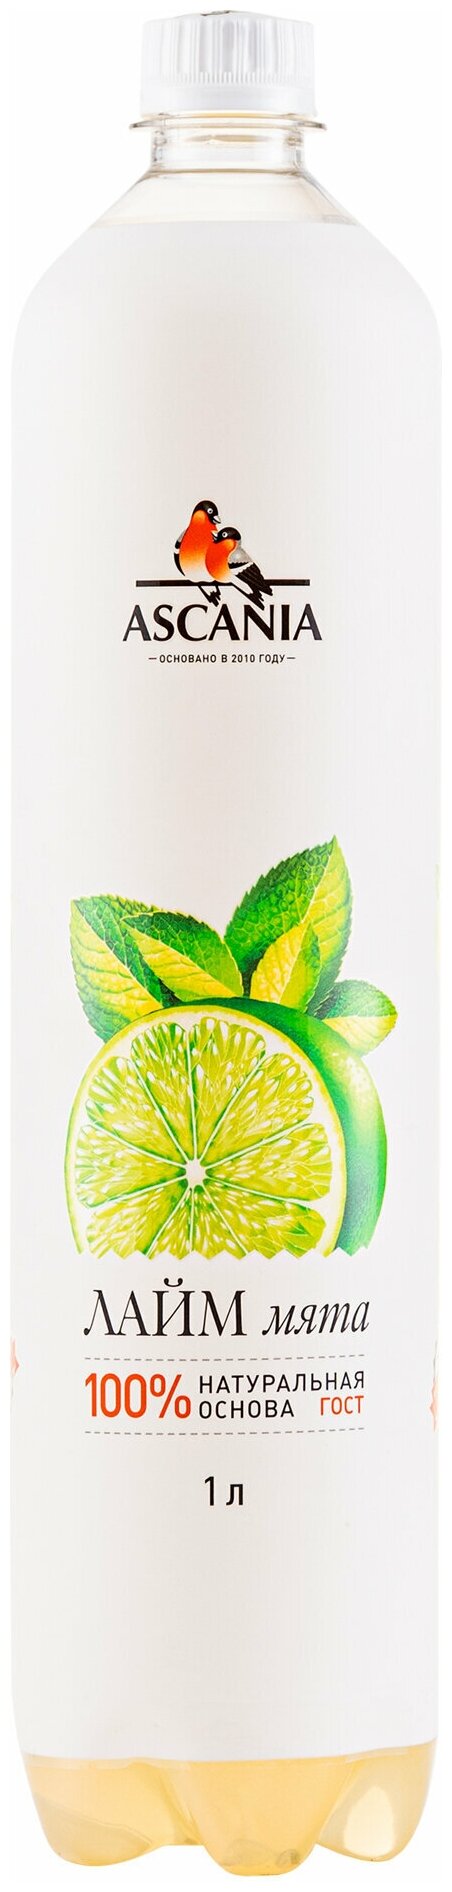 Газированный натуральный лимонад Ascania (Аскания) Лайм-Мята 1.0 л ПЭТ упаковка 6 штук - фотография № 3